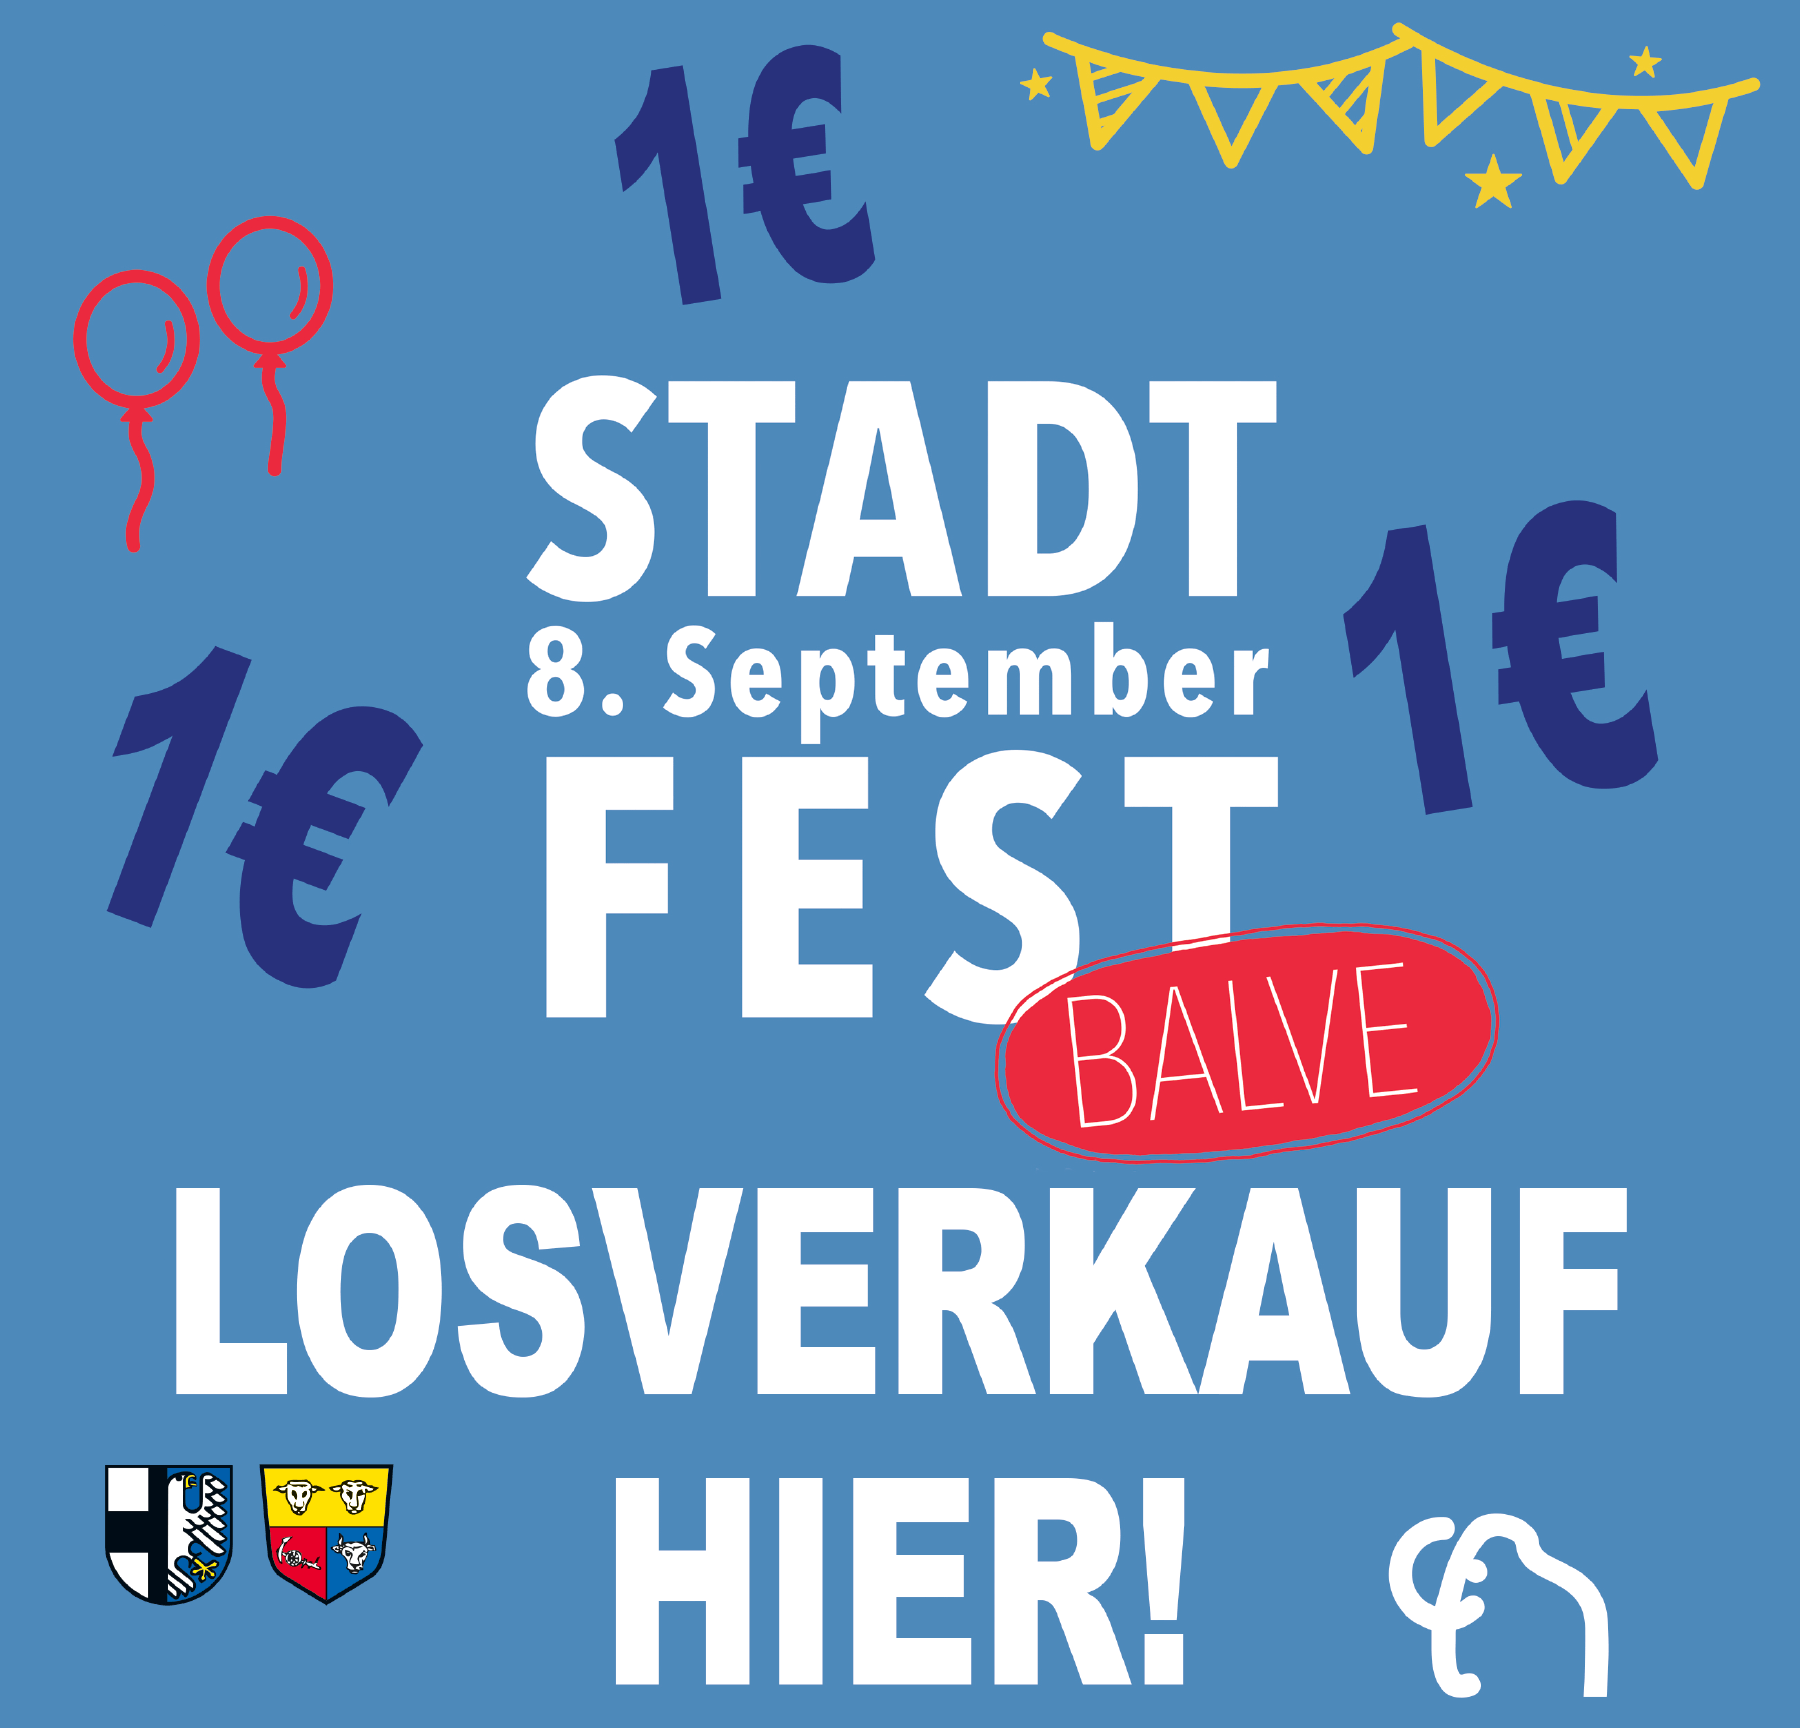 Balver Stadtfest 2018 – Bei uns gibt es Lose!